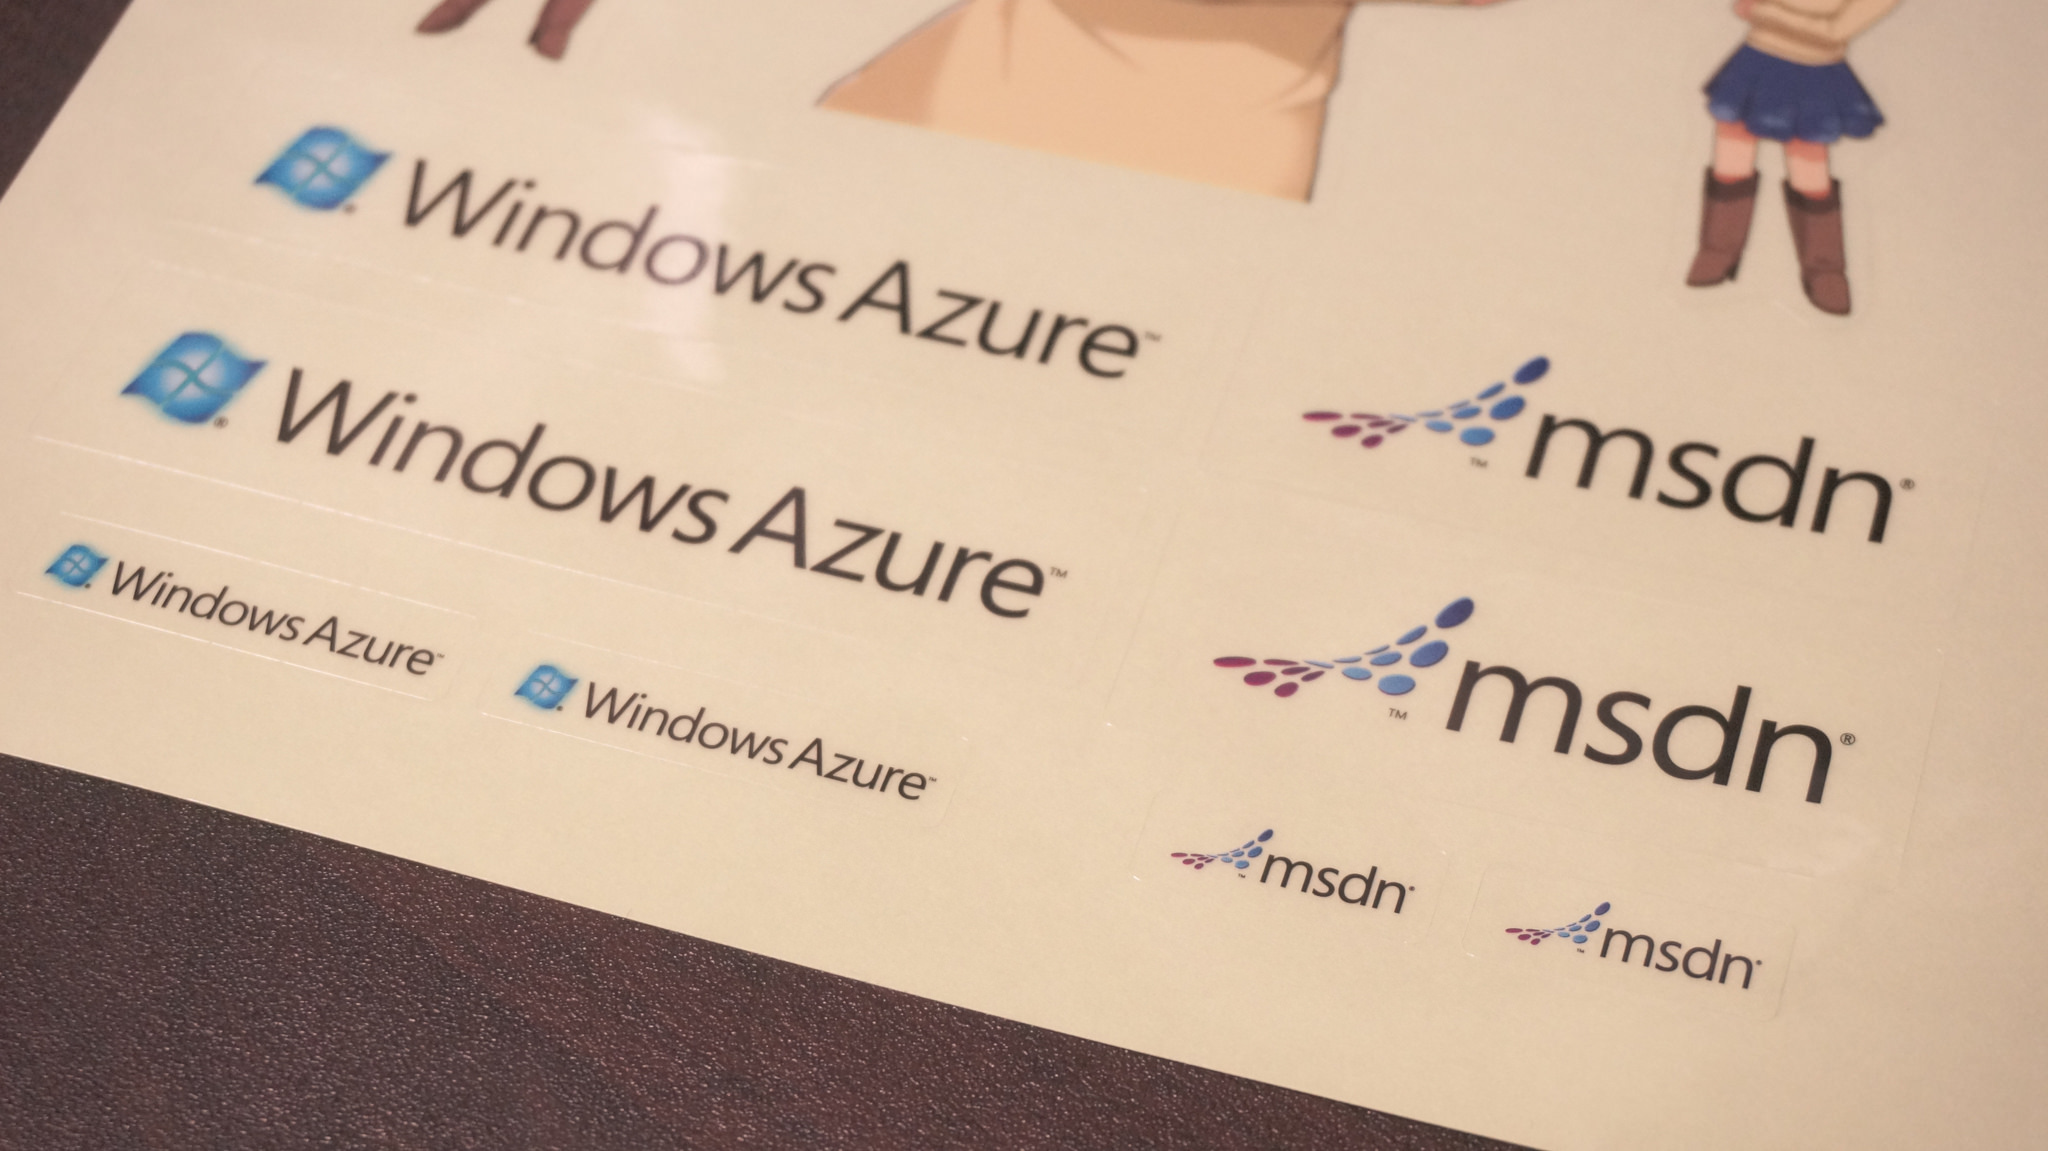 Windows-Azure-msdn-ステッカー